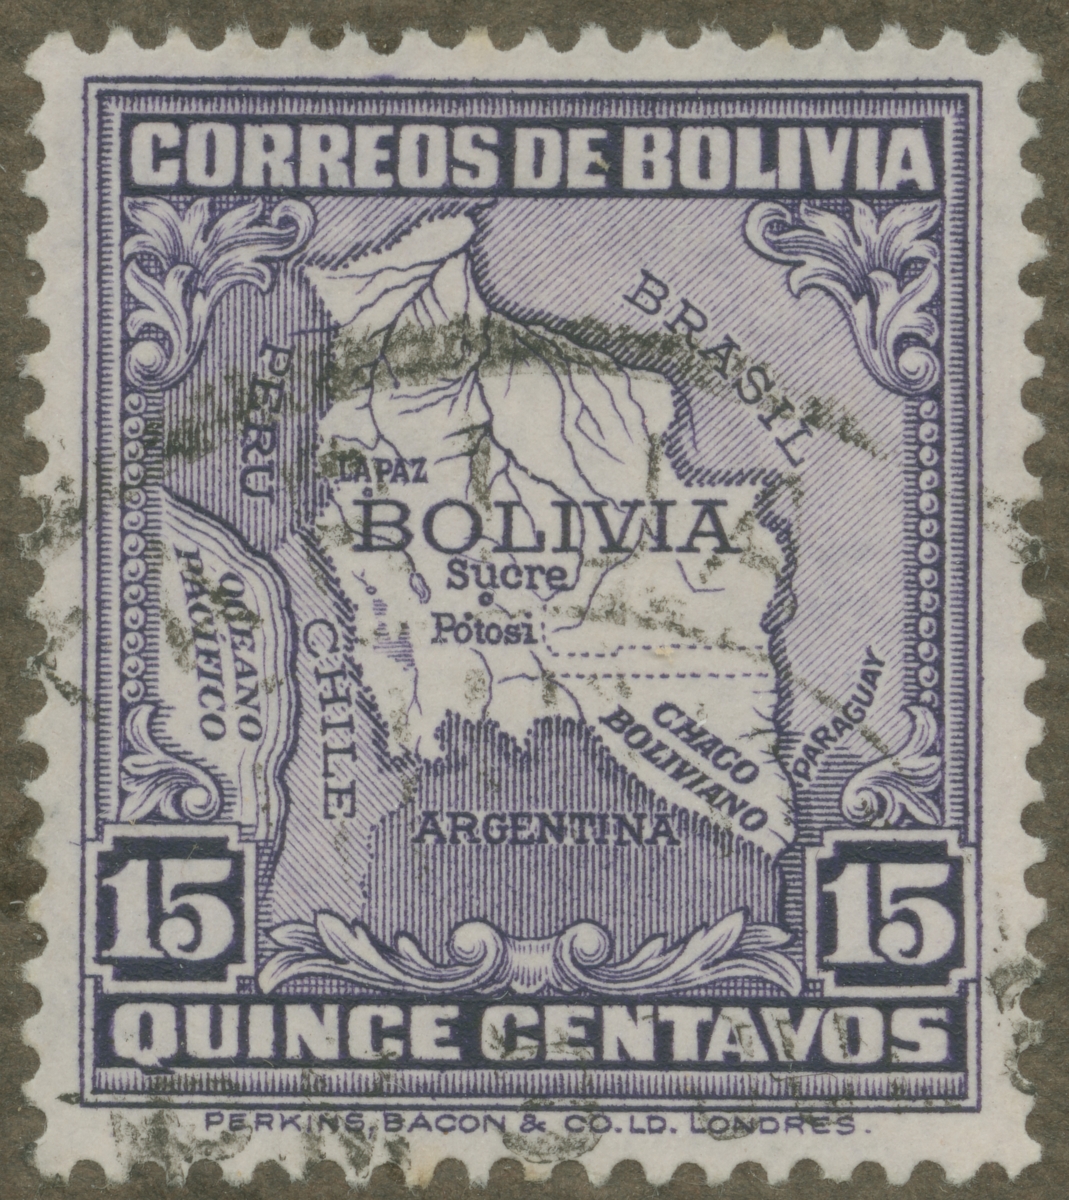 Frimärke ur Gösta Bodmans filatelistiska motivsamling, påbörjad 1950.
Frimärke från Bolivia, 1931. Motiv av karta över Bolivia.